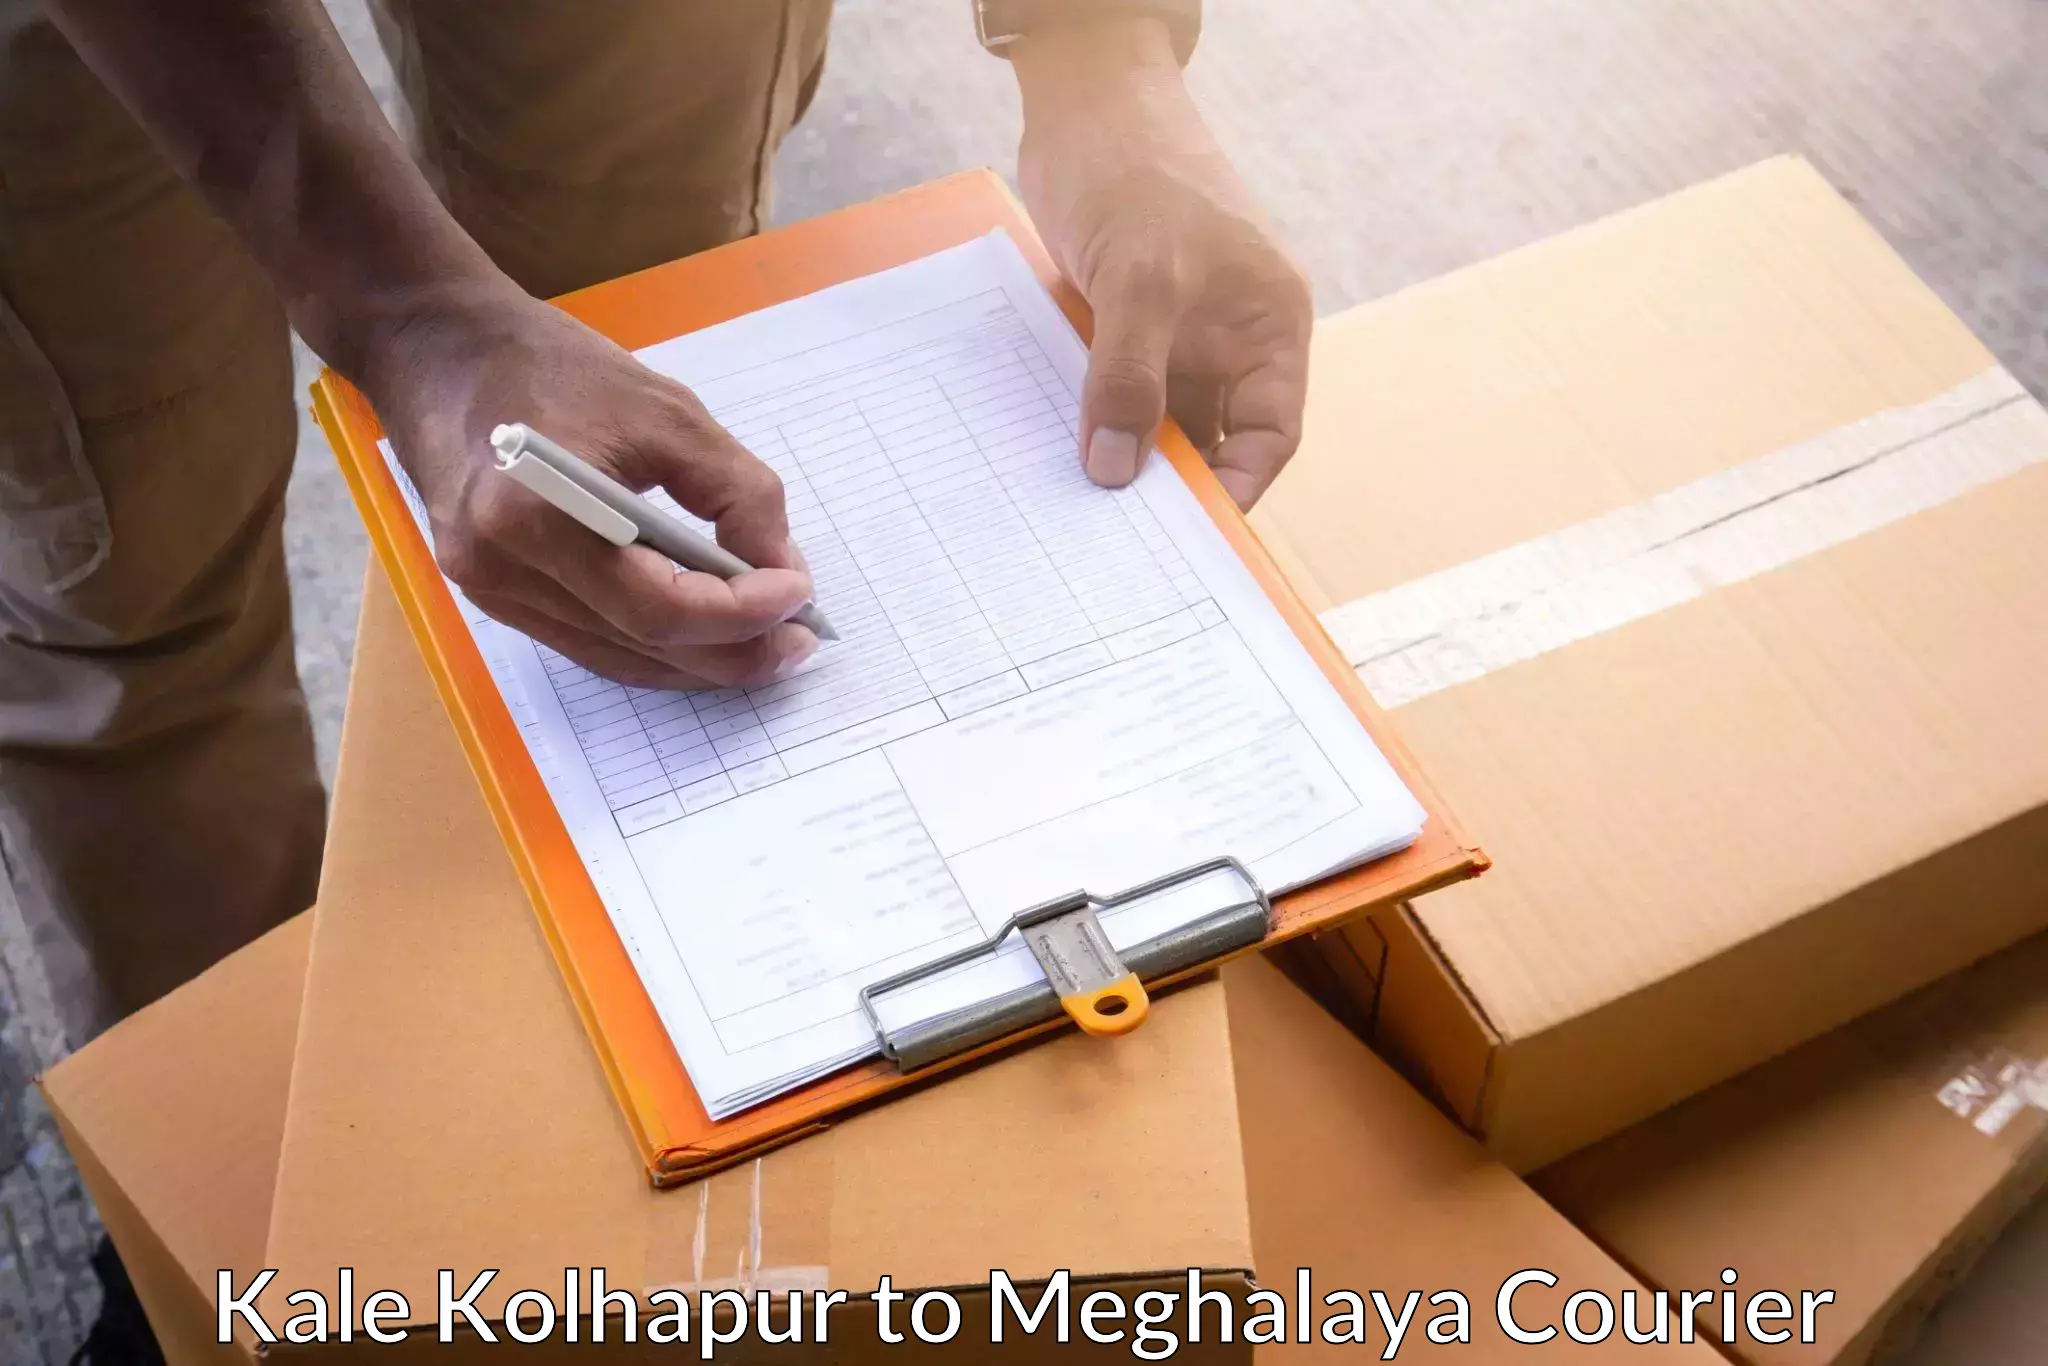 Multi-national courier services Kale Kolhapur to Dkhiah West